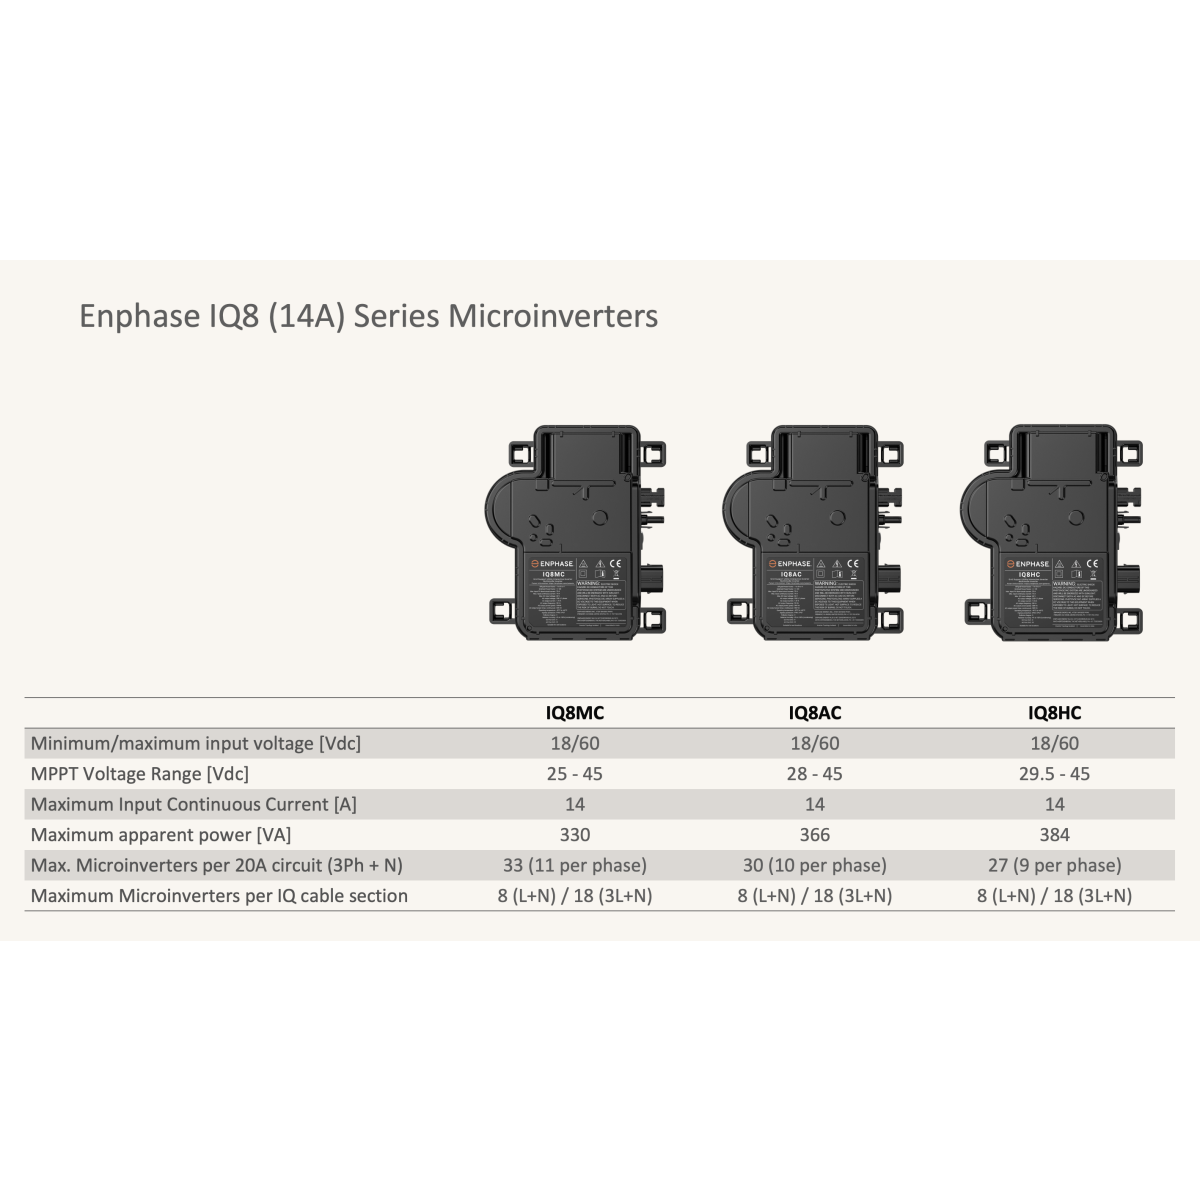 Enphase IQ8-MC Micro Wechselrichter, 480W, 14A, 330 VA, 325W, 25/45 MPP -Spannung, Max. 33 Mikroverstärker pro 20A-Schaltung